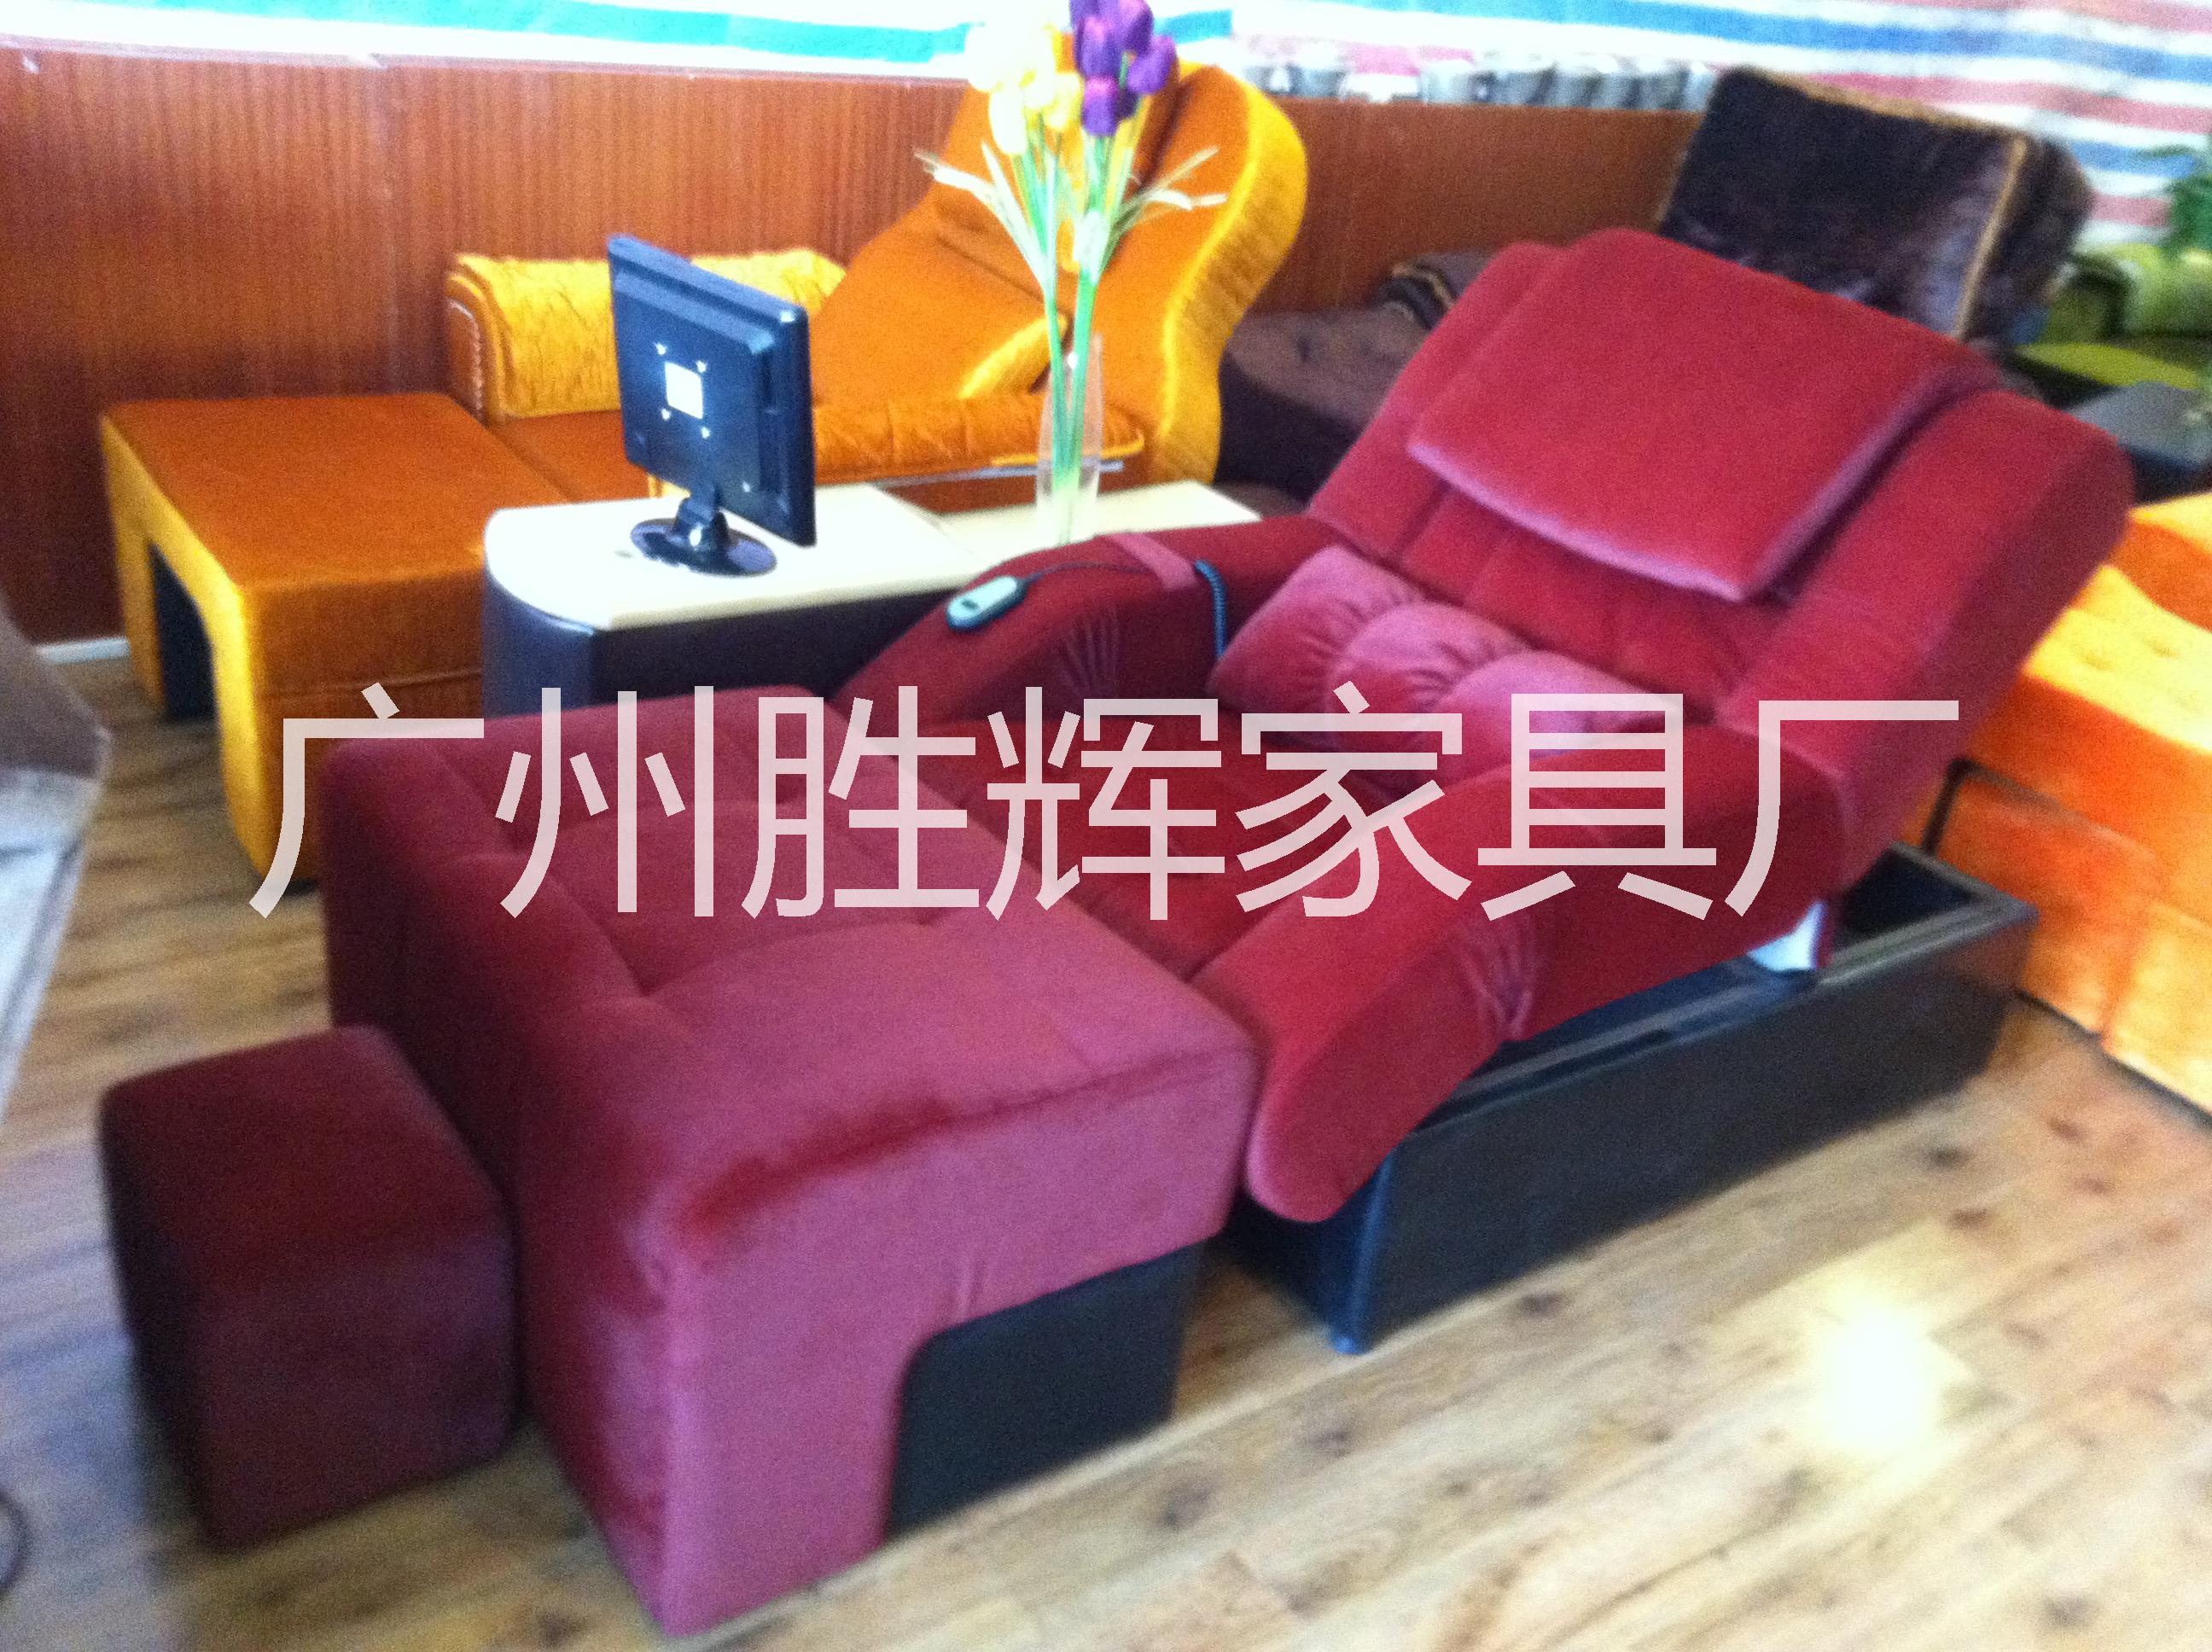 广州天河区沐足沙发公司/哪有沐足沙发定做